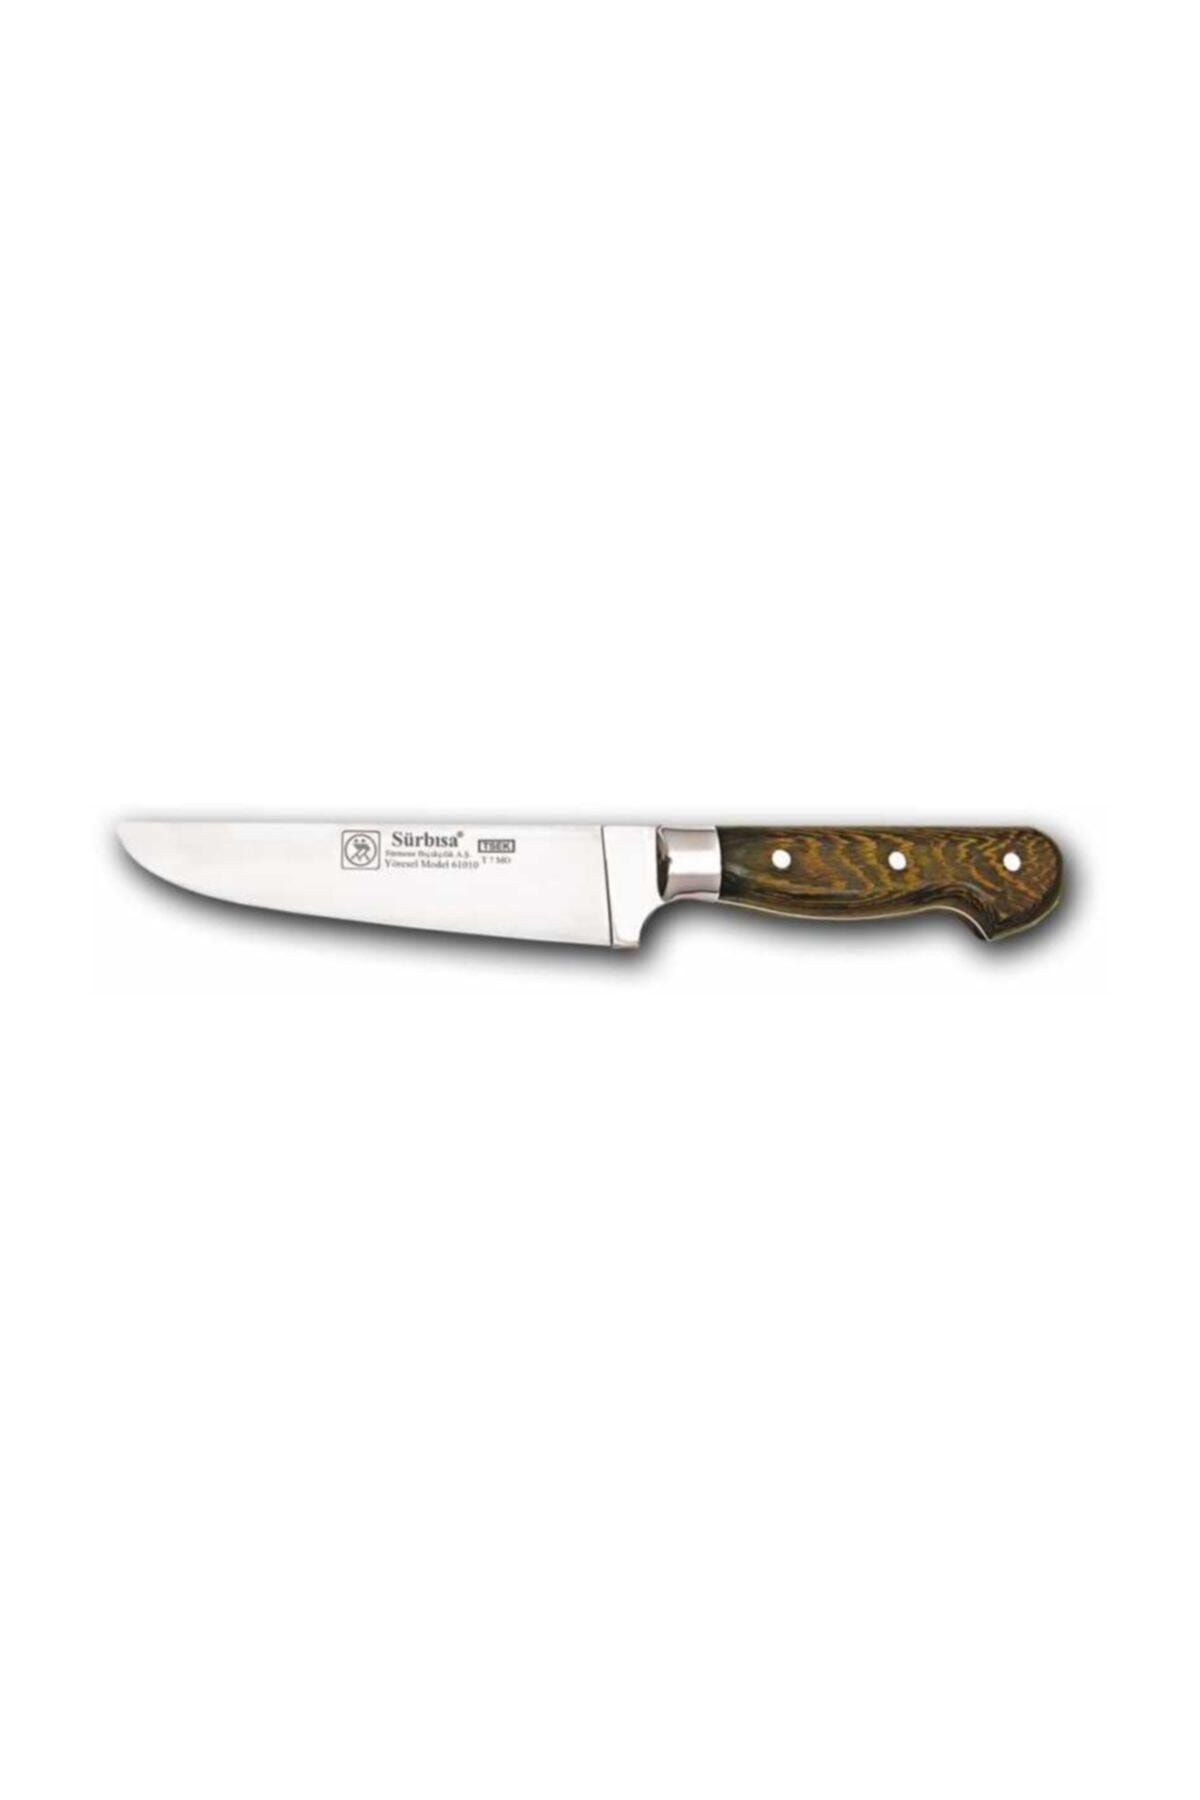 Sürbisa 61010-y.m Yöresel Mutfak Bıçağı Ahşap Sap 16 Cm